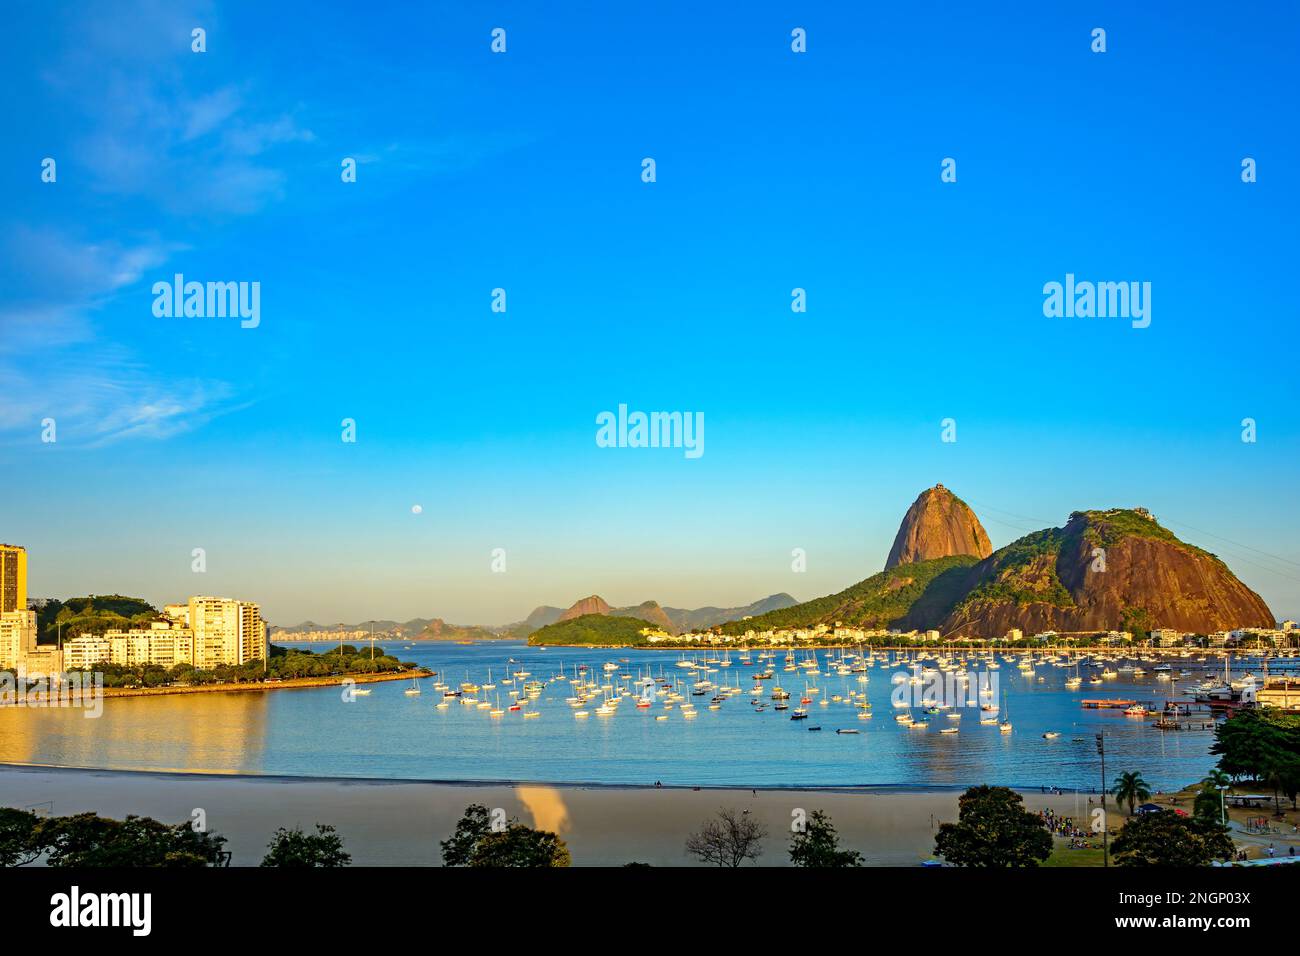 La baie de Guanabara et la plage de Botafogo et ses bateaux avec la montagne de Sugarloaf en arrière-plan dans la ville de Rio de Janeiro Banque D'Images